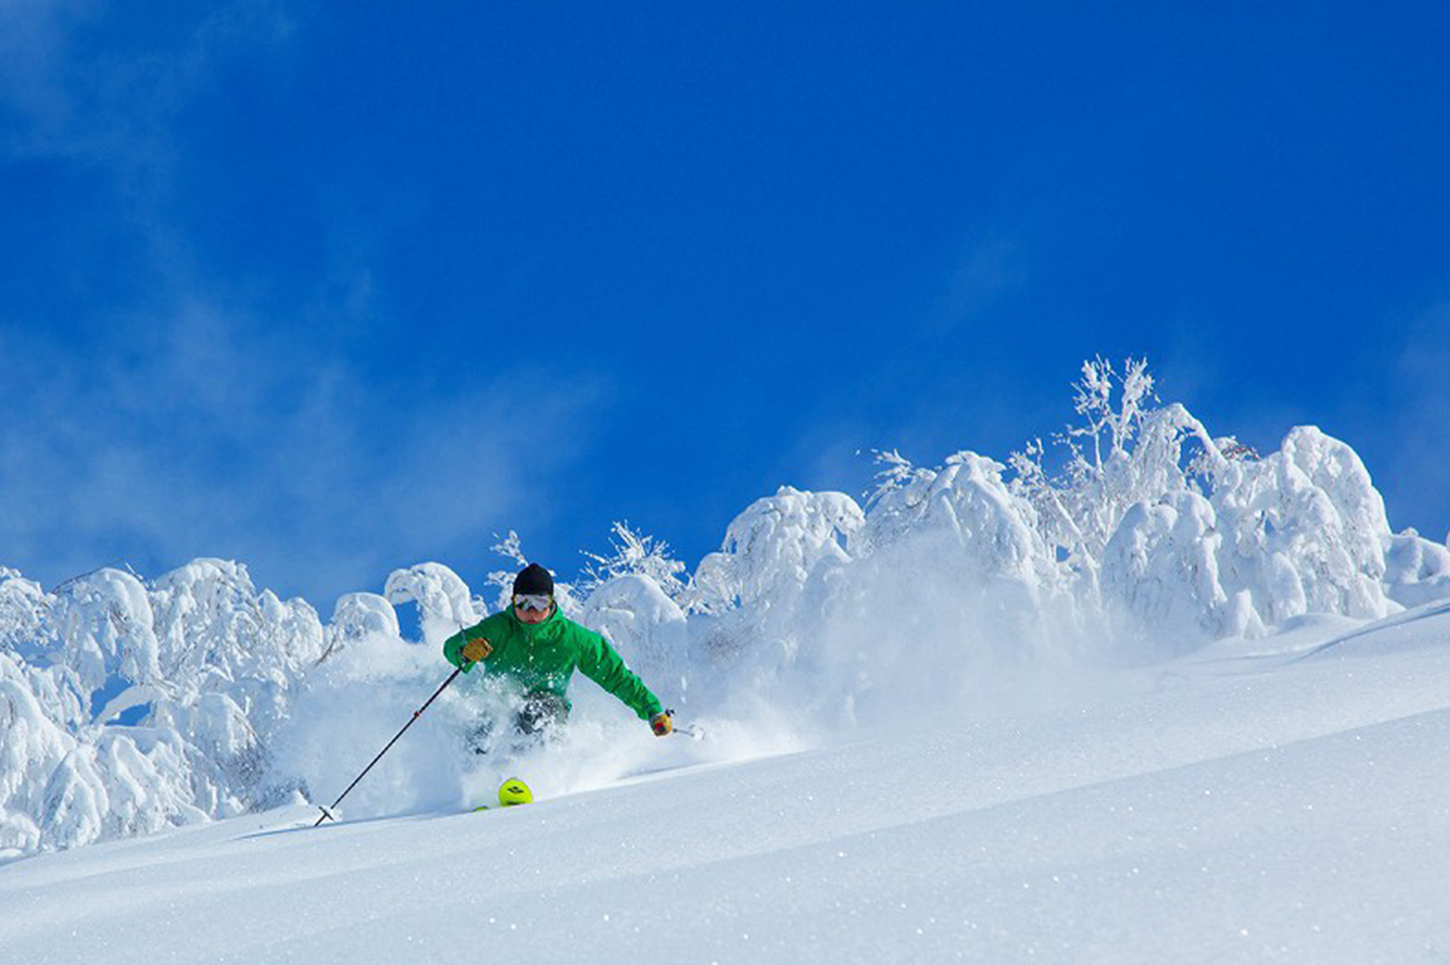 5 ลานสกีสุดเจ๋งในฮอกไกโด อยากเล่นสกีมันส์ๆ ในฤดูหนาวของญี่ปุ่น หิมะนุ่ม เซลฟี่ ฟินสุด